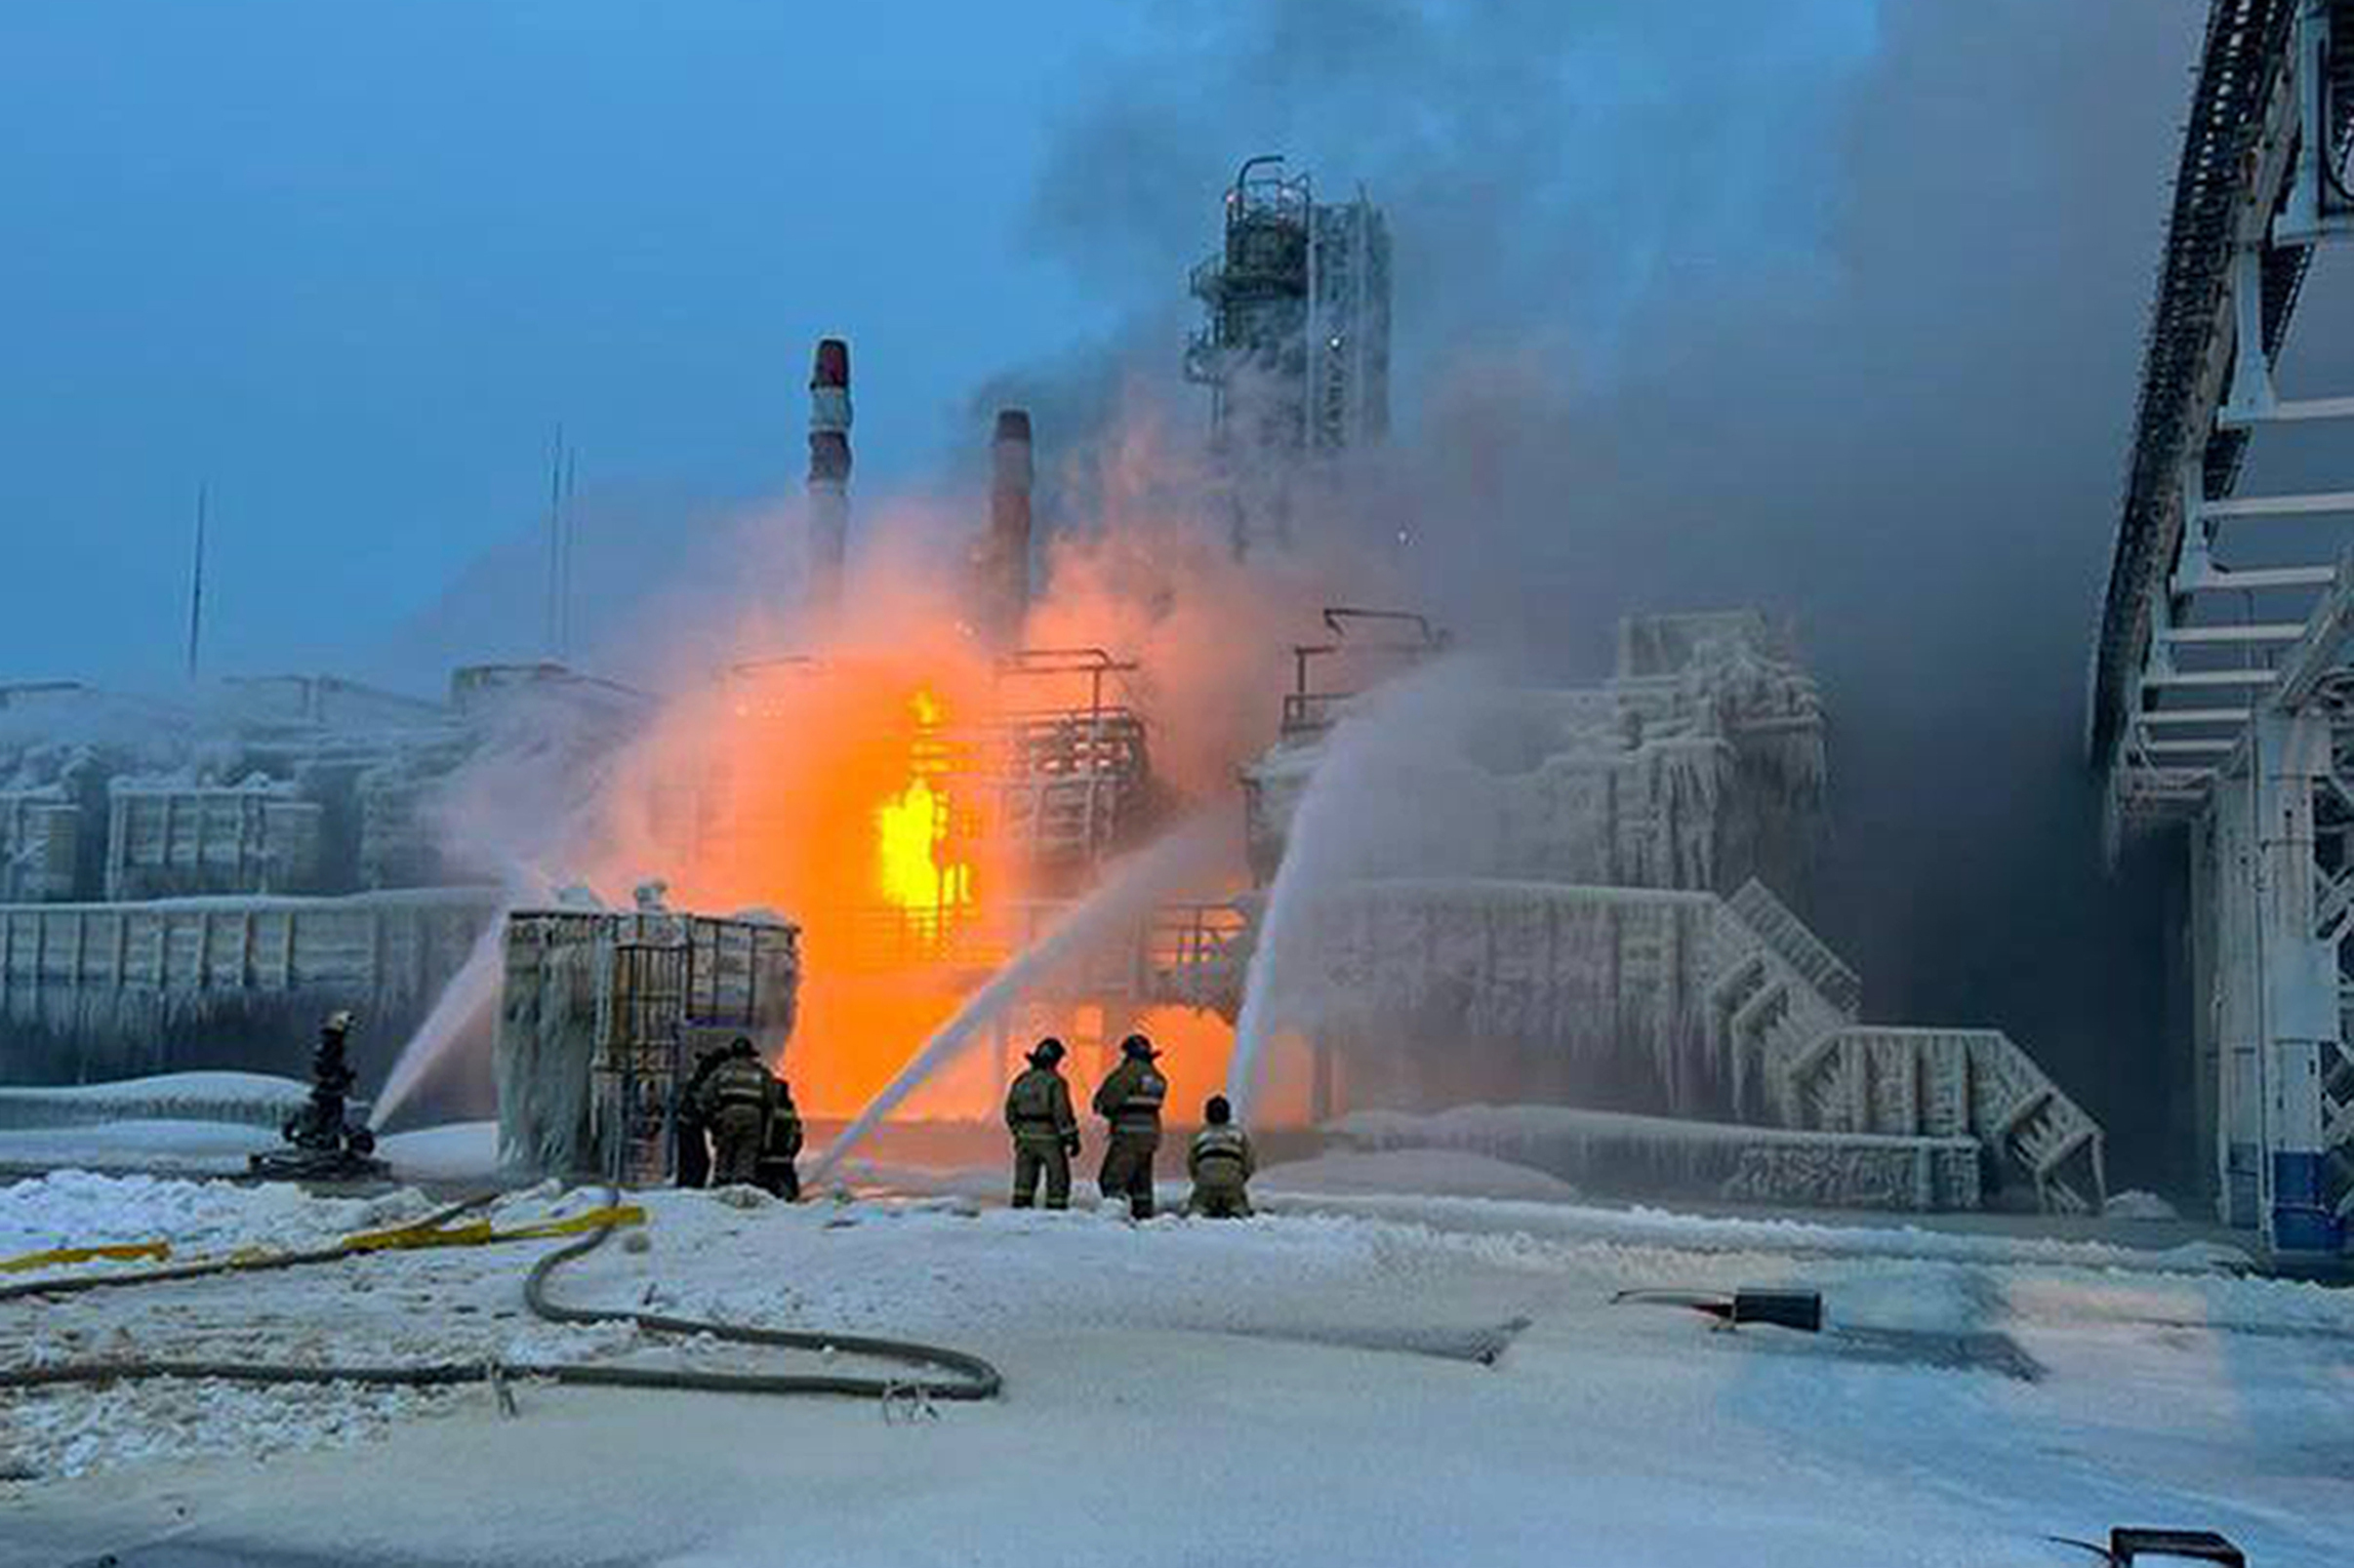 Σε κατάσταση συναγερμού οι υποδομές στην περιφέρεια του Λένινγκραντ μετά την πυρκαγιά στον σταθμό αερίου της Novatek